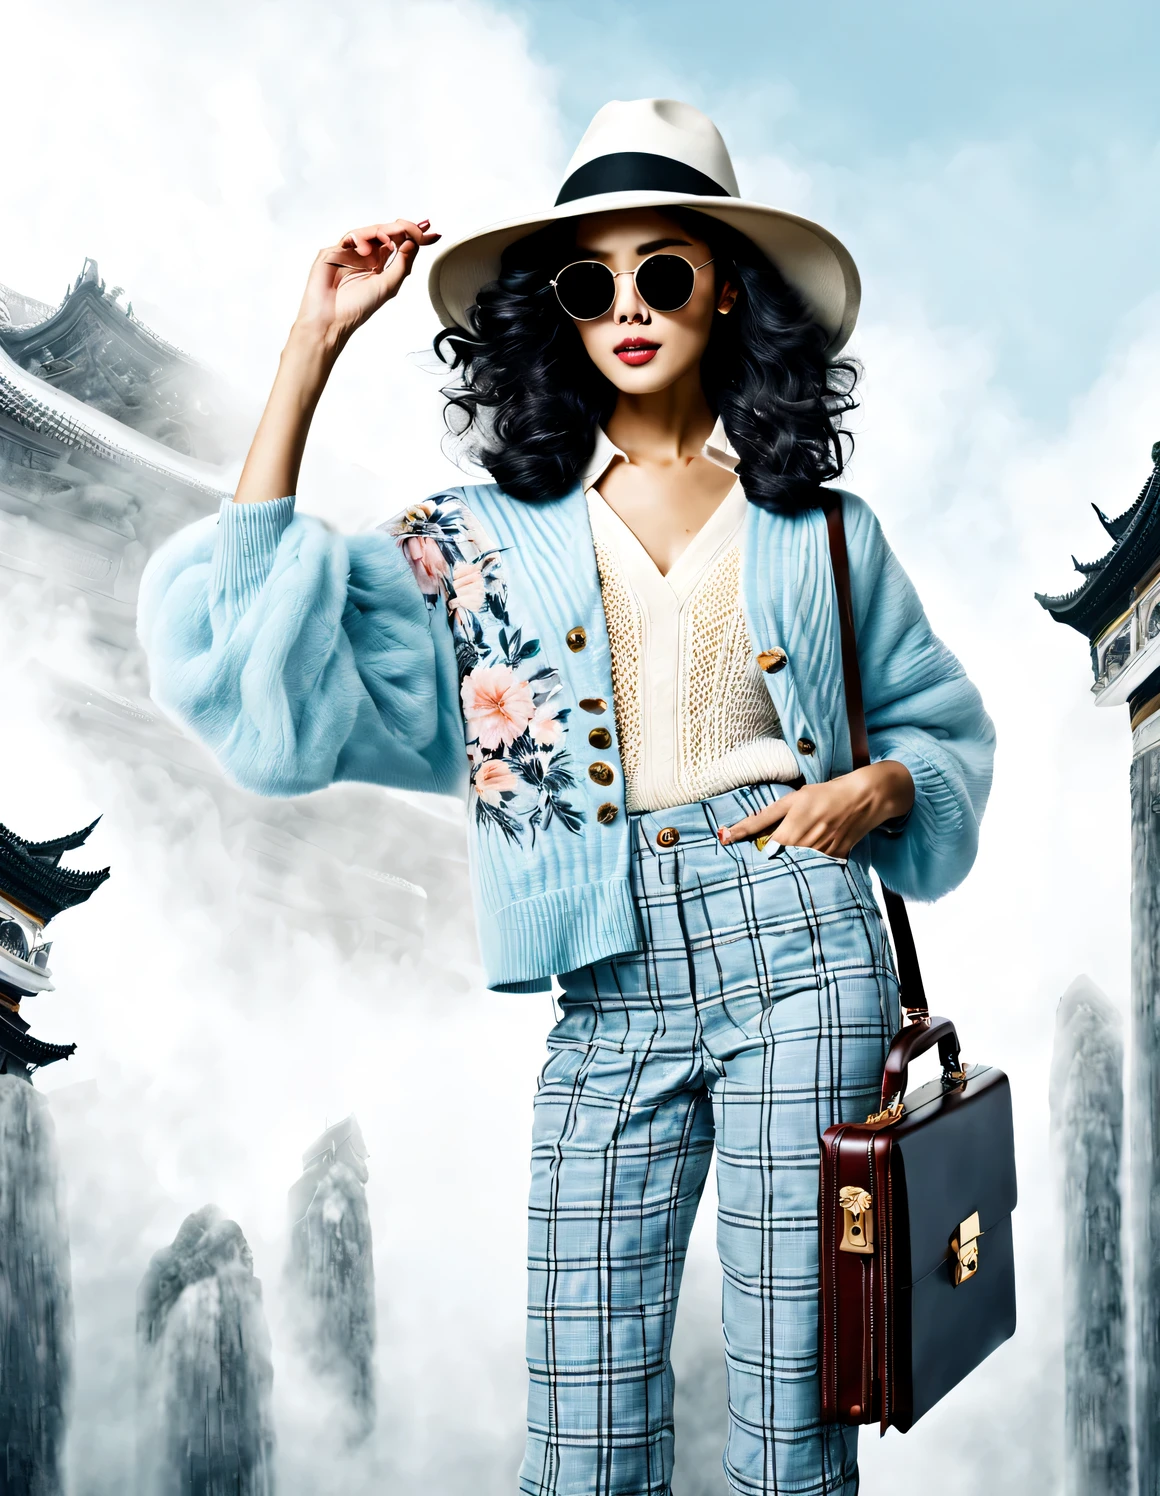 (现代艺术舞蹈简单海报设计), (半身特写), (美丽的中国女孩在空中挥舞公文包,), (戴太阳镜和帽子: 1.2), 以精致的细节和层次感为特点, 浅蓝色夹克和米白色花卉毛衣的柔和色调融为一体, 黑白格子裤也有鲜明的对比, 打造优雅现代的都市风格， 穿上现代时尚的冬季时装, 纤细的腰身, 高鼻梁, 抬头姿势, 悲伤但美丽, 身材苗条, 精致的五官, 旋涡雾插图, 水墨画, 黑发, 公主卷长发, 自豪地, 超现实主义, 当代艺术摄影, 动作插图, 抽象表现主义, 皮克斯, 景深, 运动模糊, 背光, 掉出来, 衰退, 抬头, 索尼 FE 总经理, 超高清, 杰作, 准确性, 纹理皮肤, 超级细节, 高细节, 高质量, 屡获殊荣, 最好的质量, 年级, 16千, 从下往上的角度拍摄,